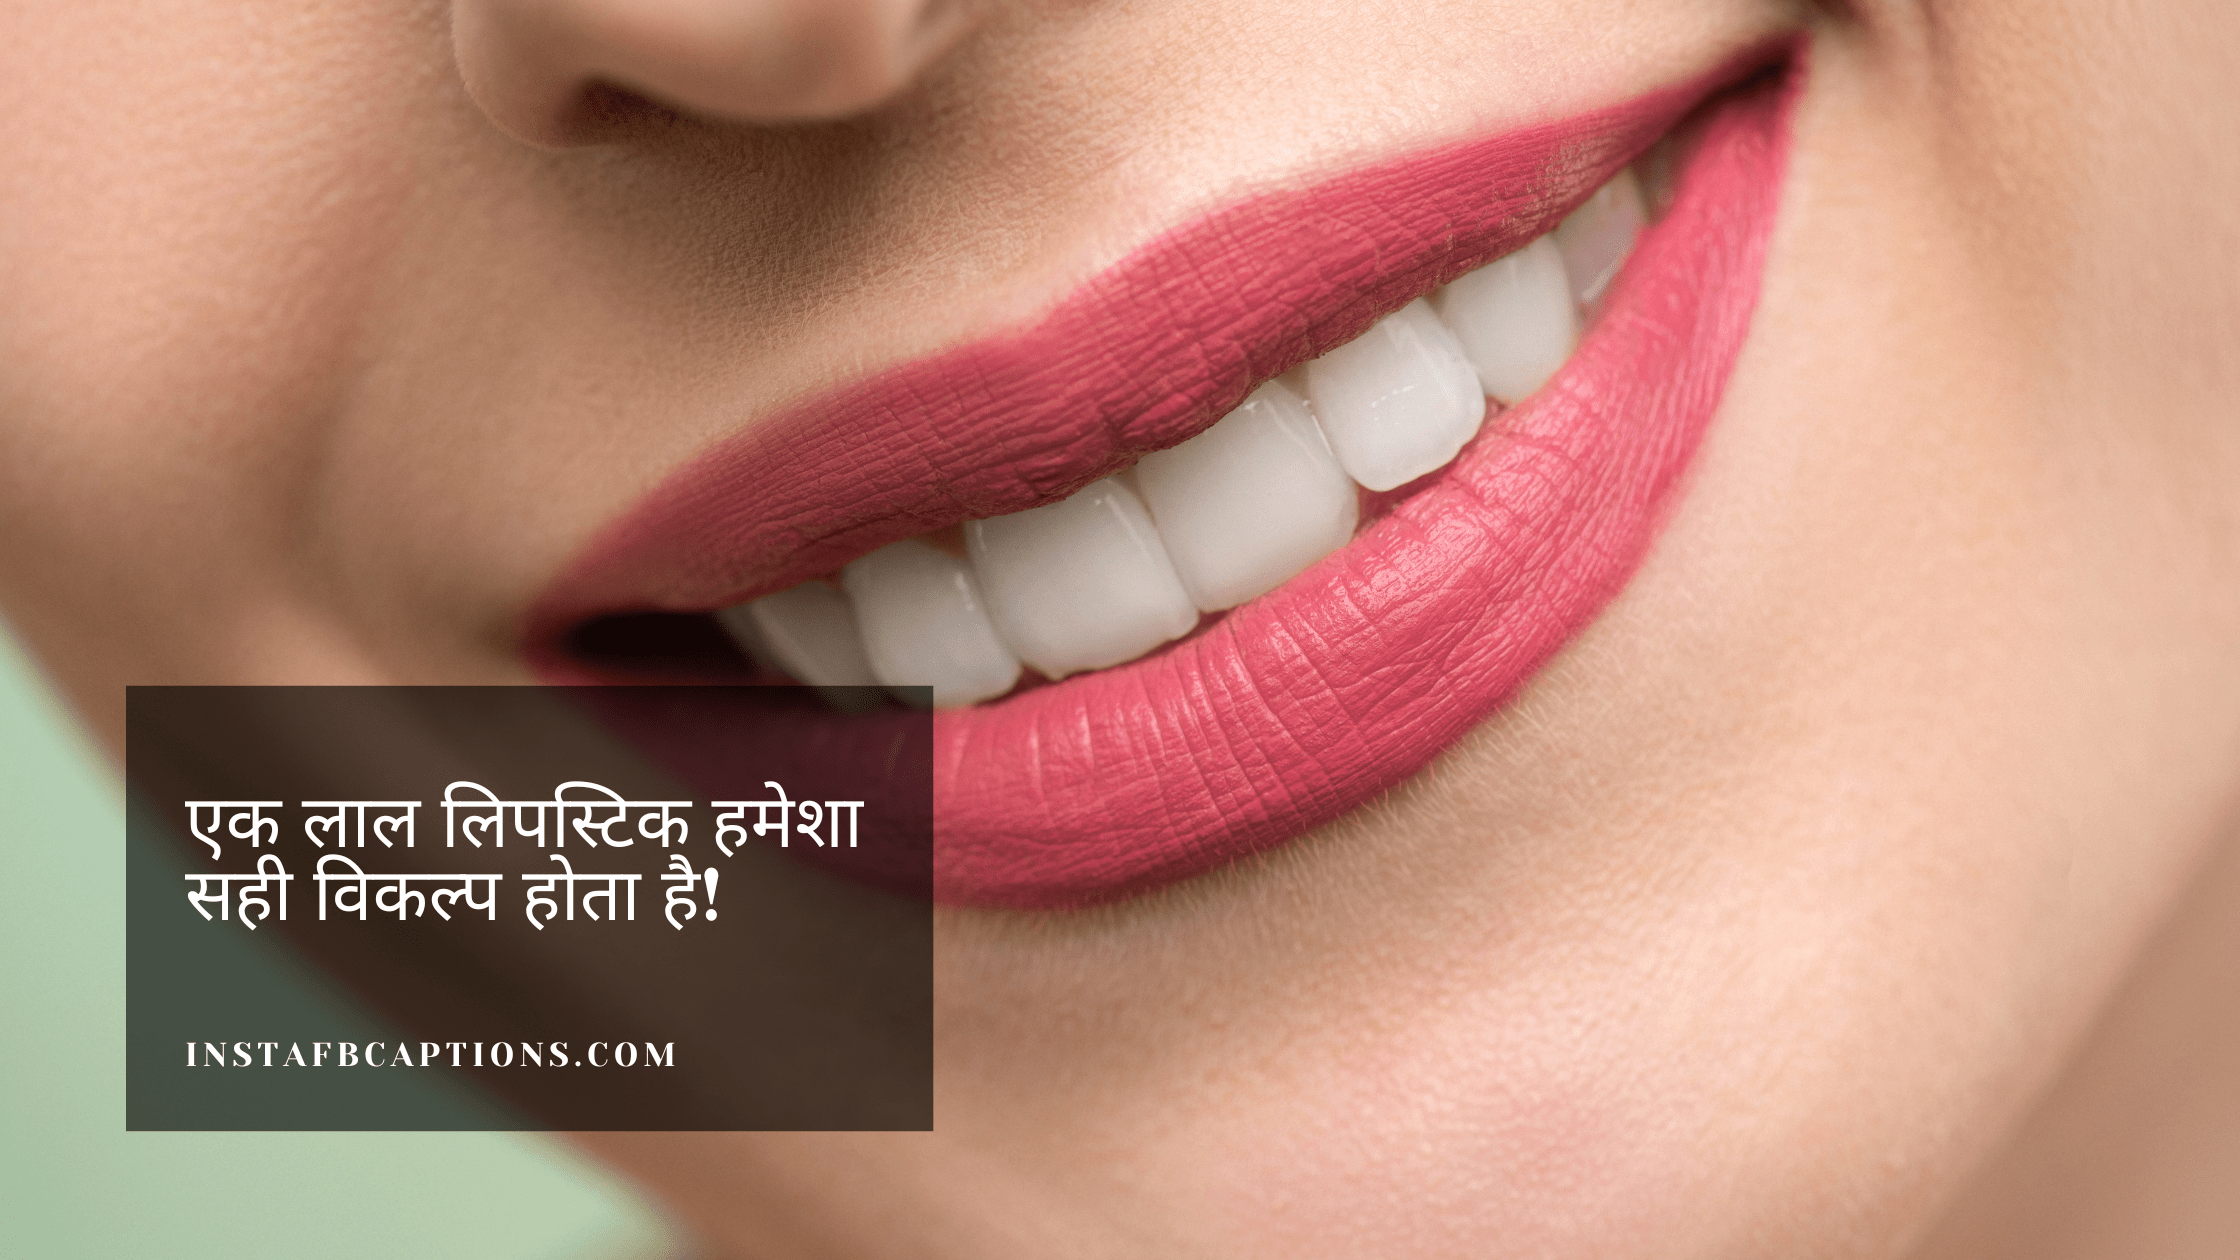 Hindi Red Lipstick Quotes  - Hindi Red Lipstick Quotes - Red Lipstick Captions Quotes for Instagram in 2022